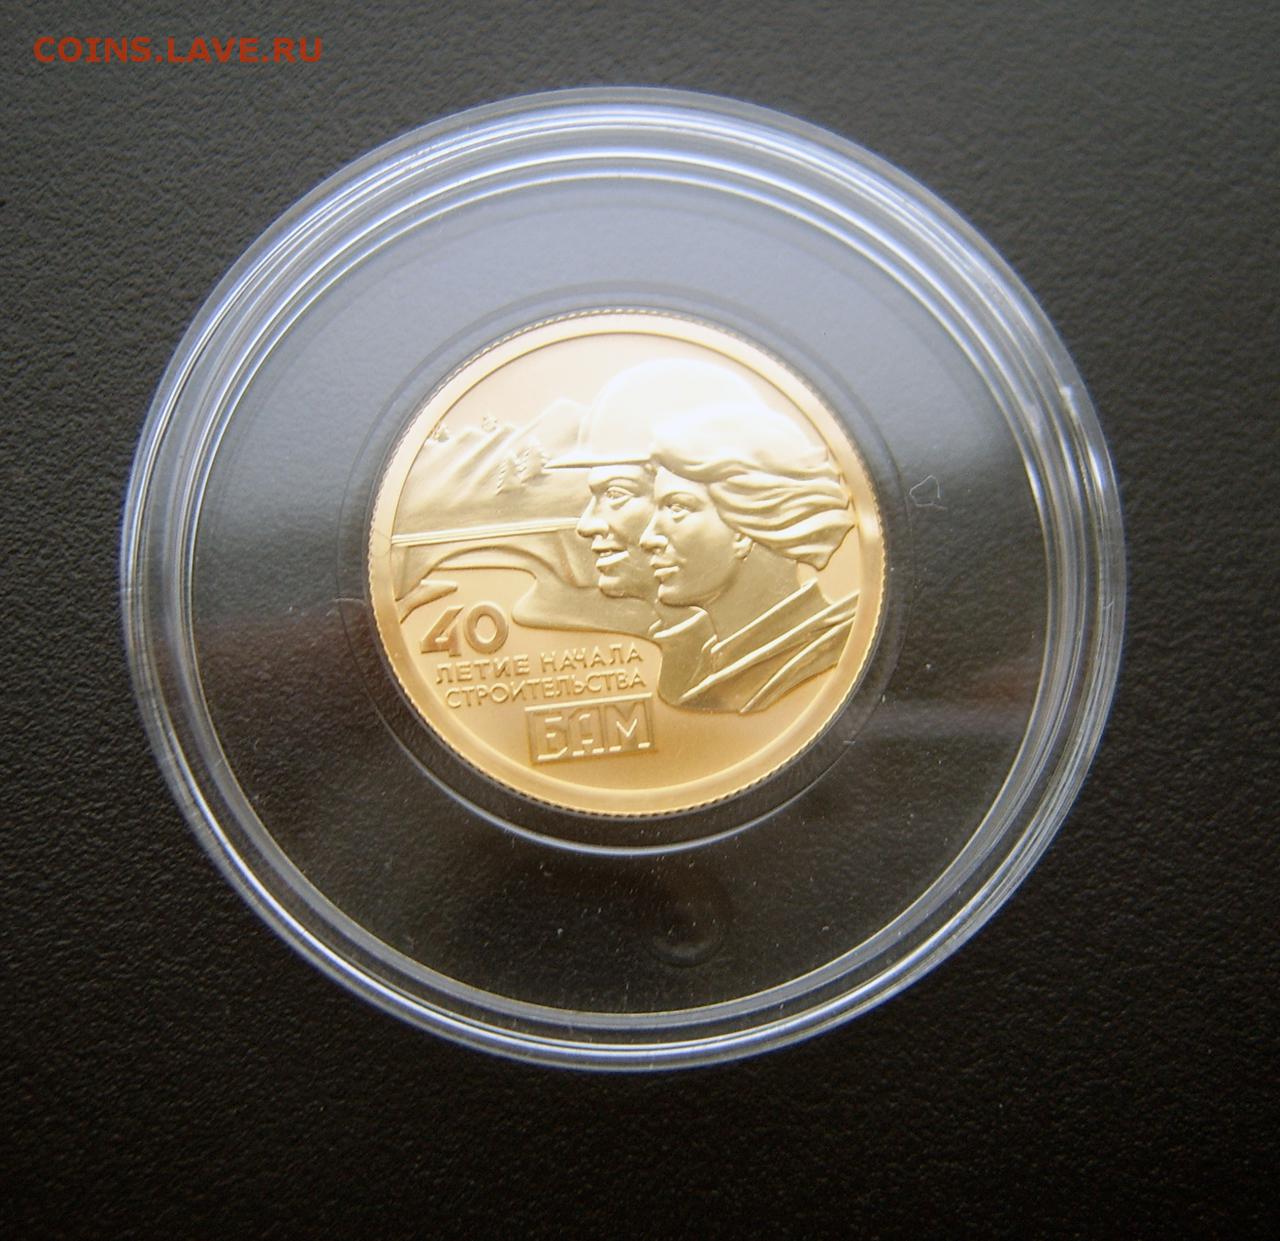 3 рубля 50 лет бам. Серебряная монета в честь начала строитьльствабам. Монета к 50 летию БАМ цена.